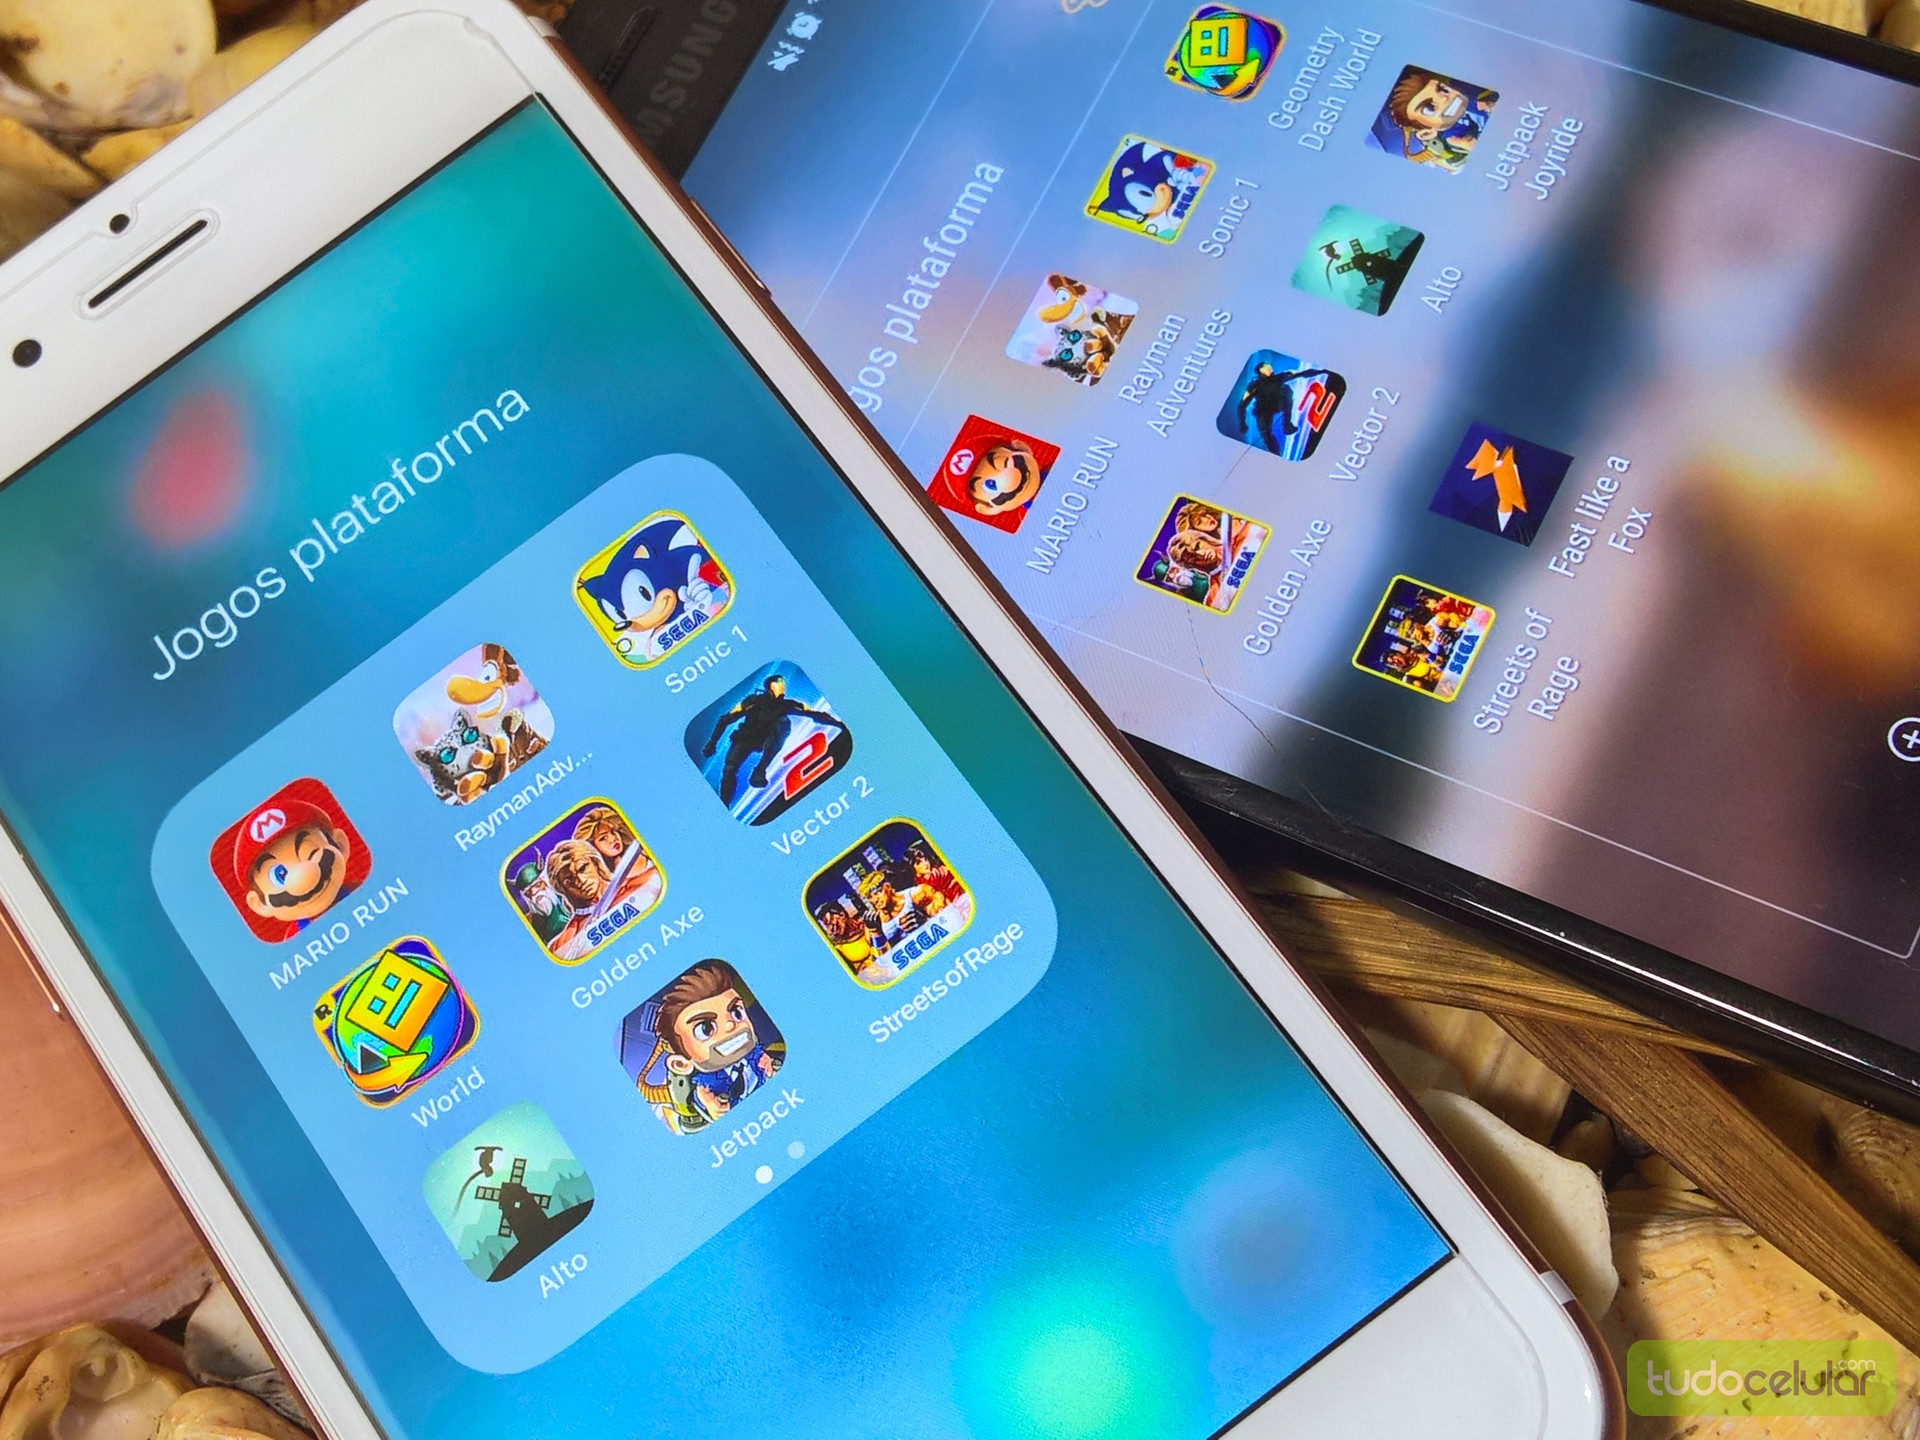 7 jogos de ritmo para jogar no celular [Android e iPhone] – Tecnoblog